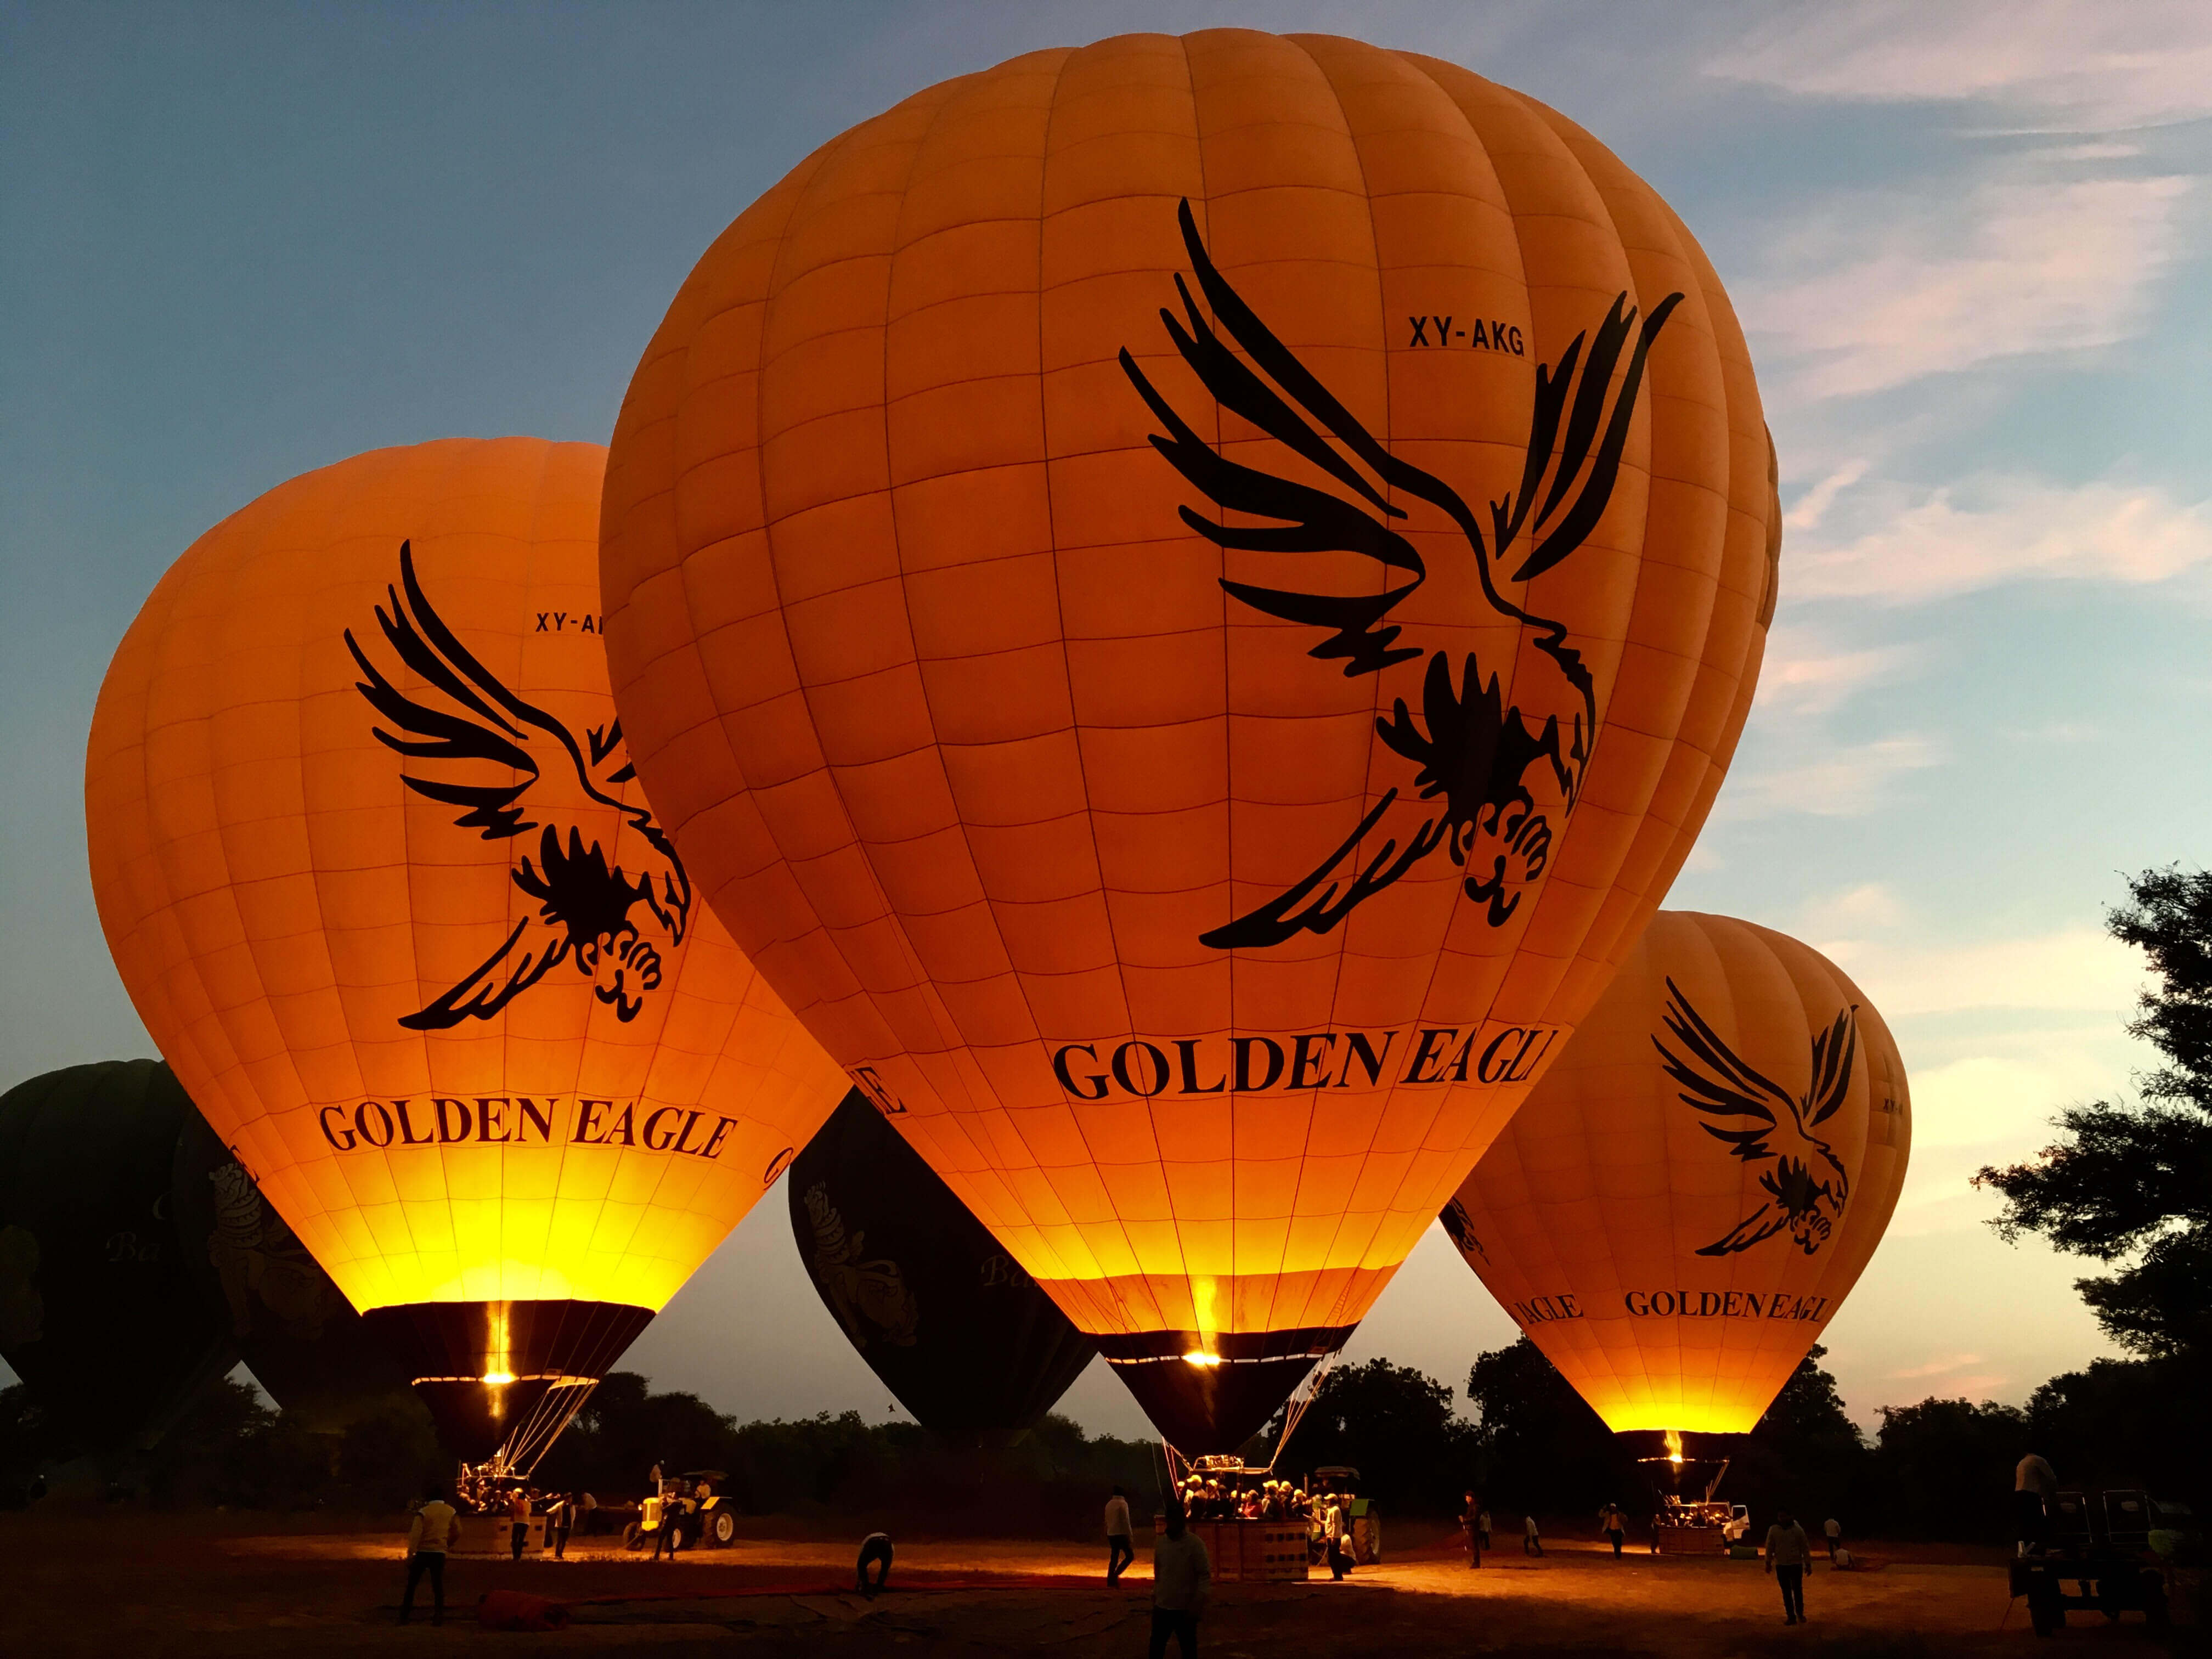 Golden Eagle Ballooing